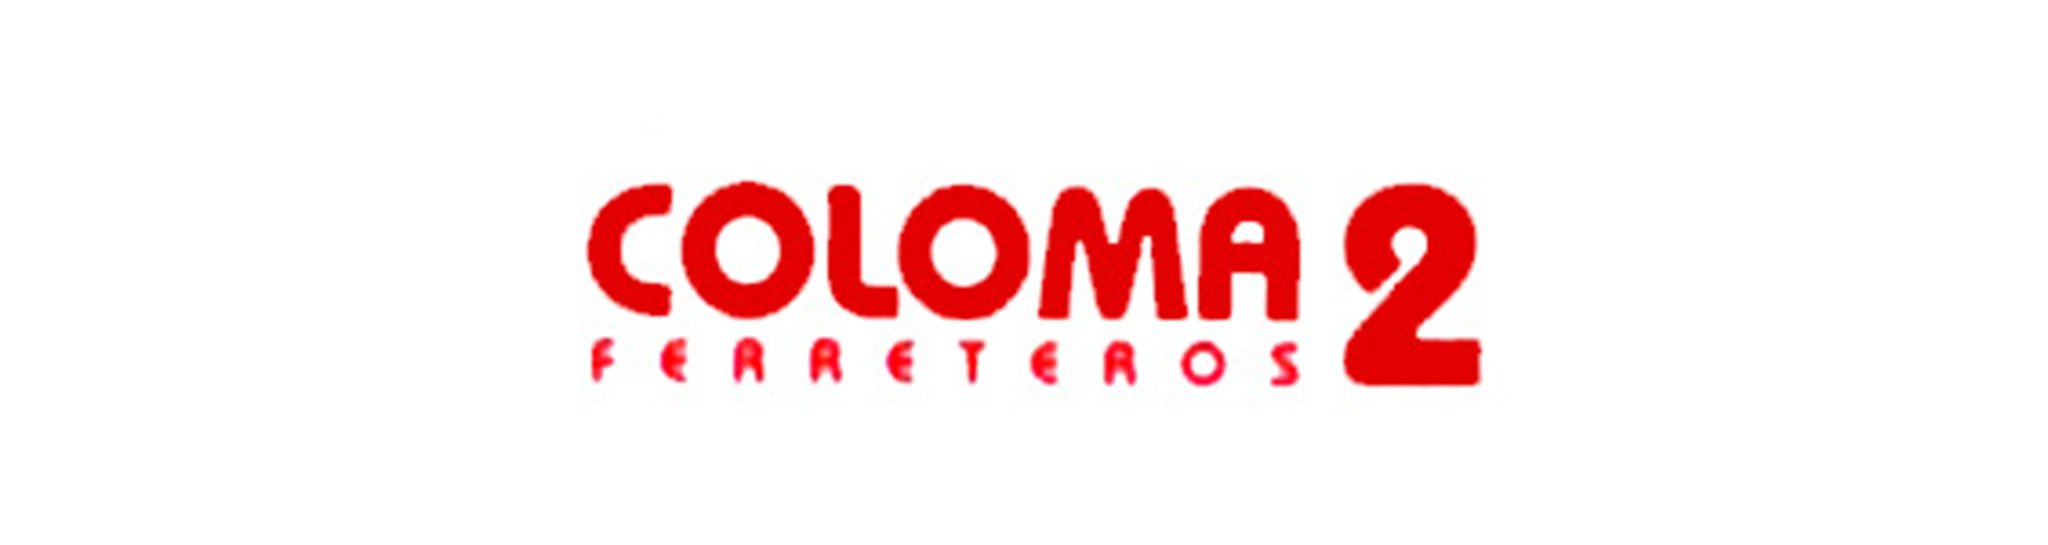 Logotipo de Coloma 2 Ferreteros